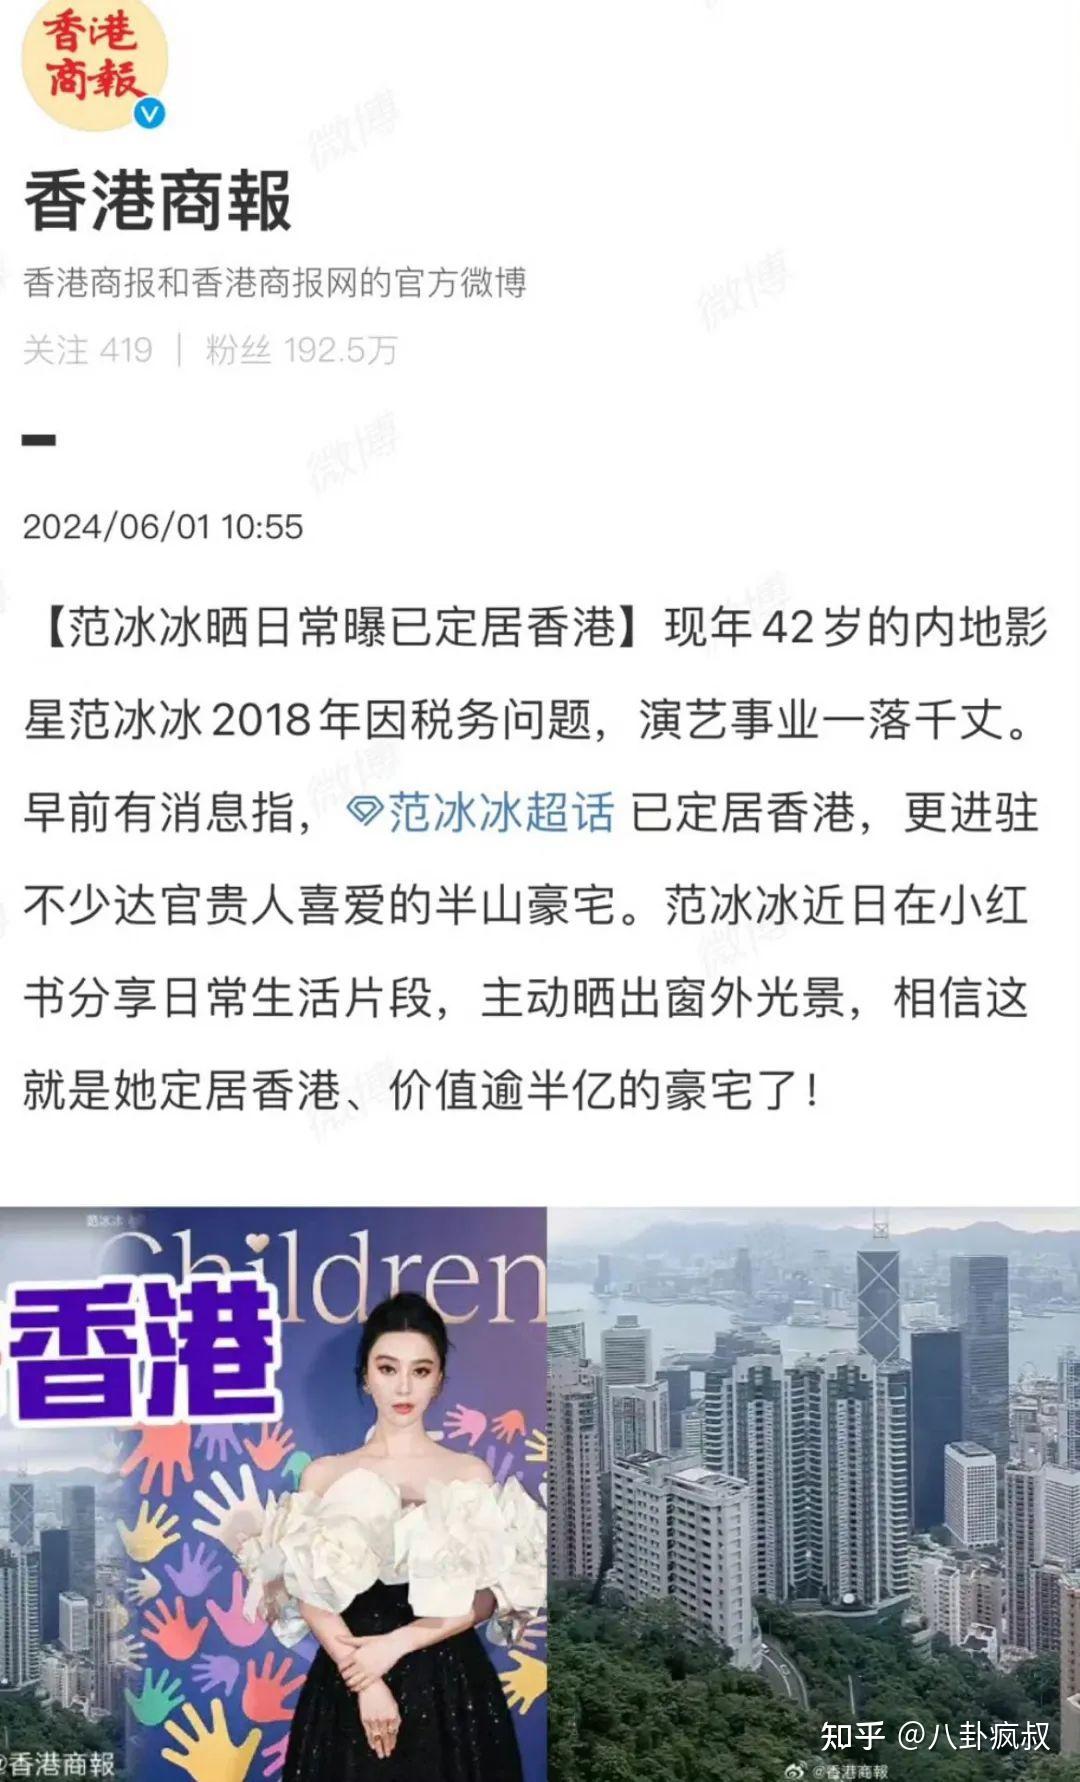 近日香港商报发了一条关于范冰冰的消息,说是她已经悄悄定居香港